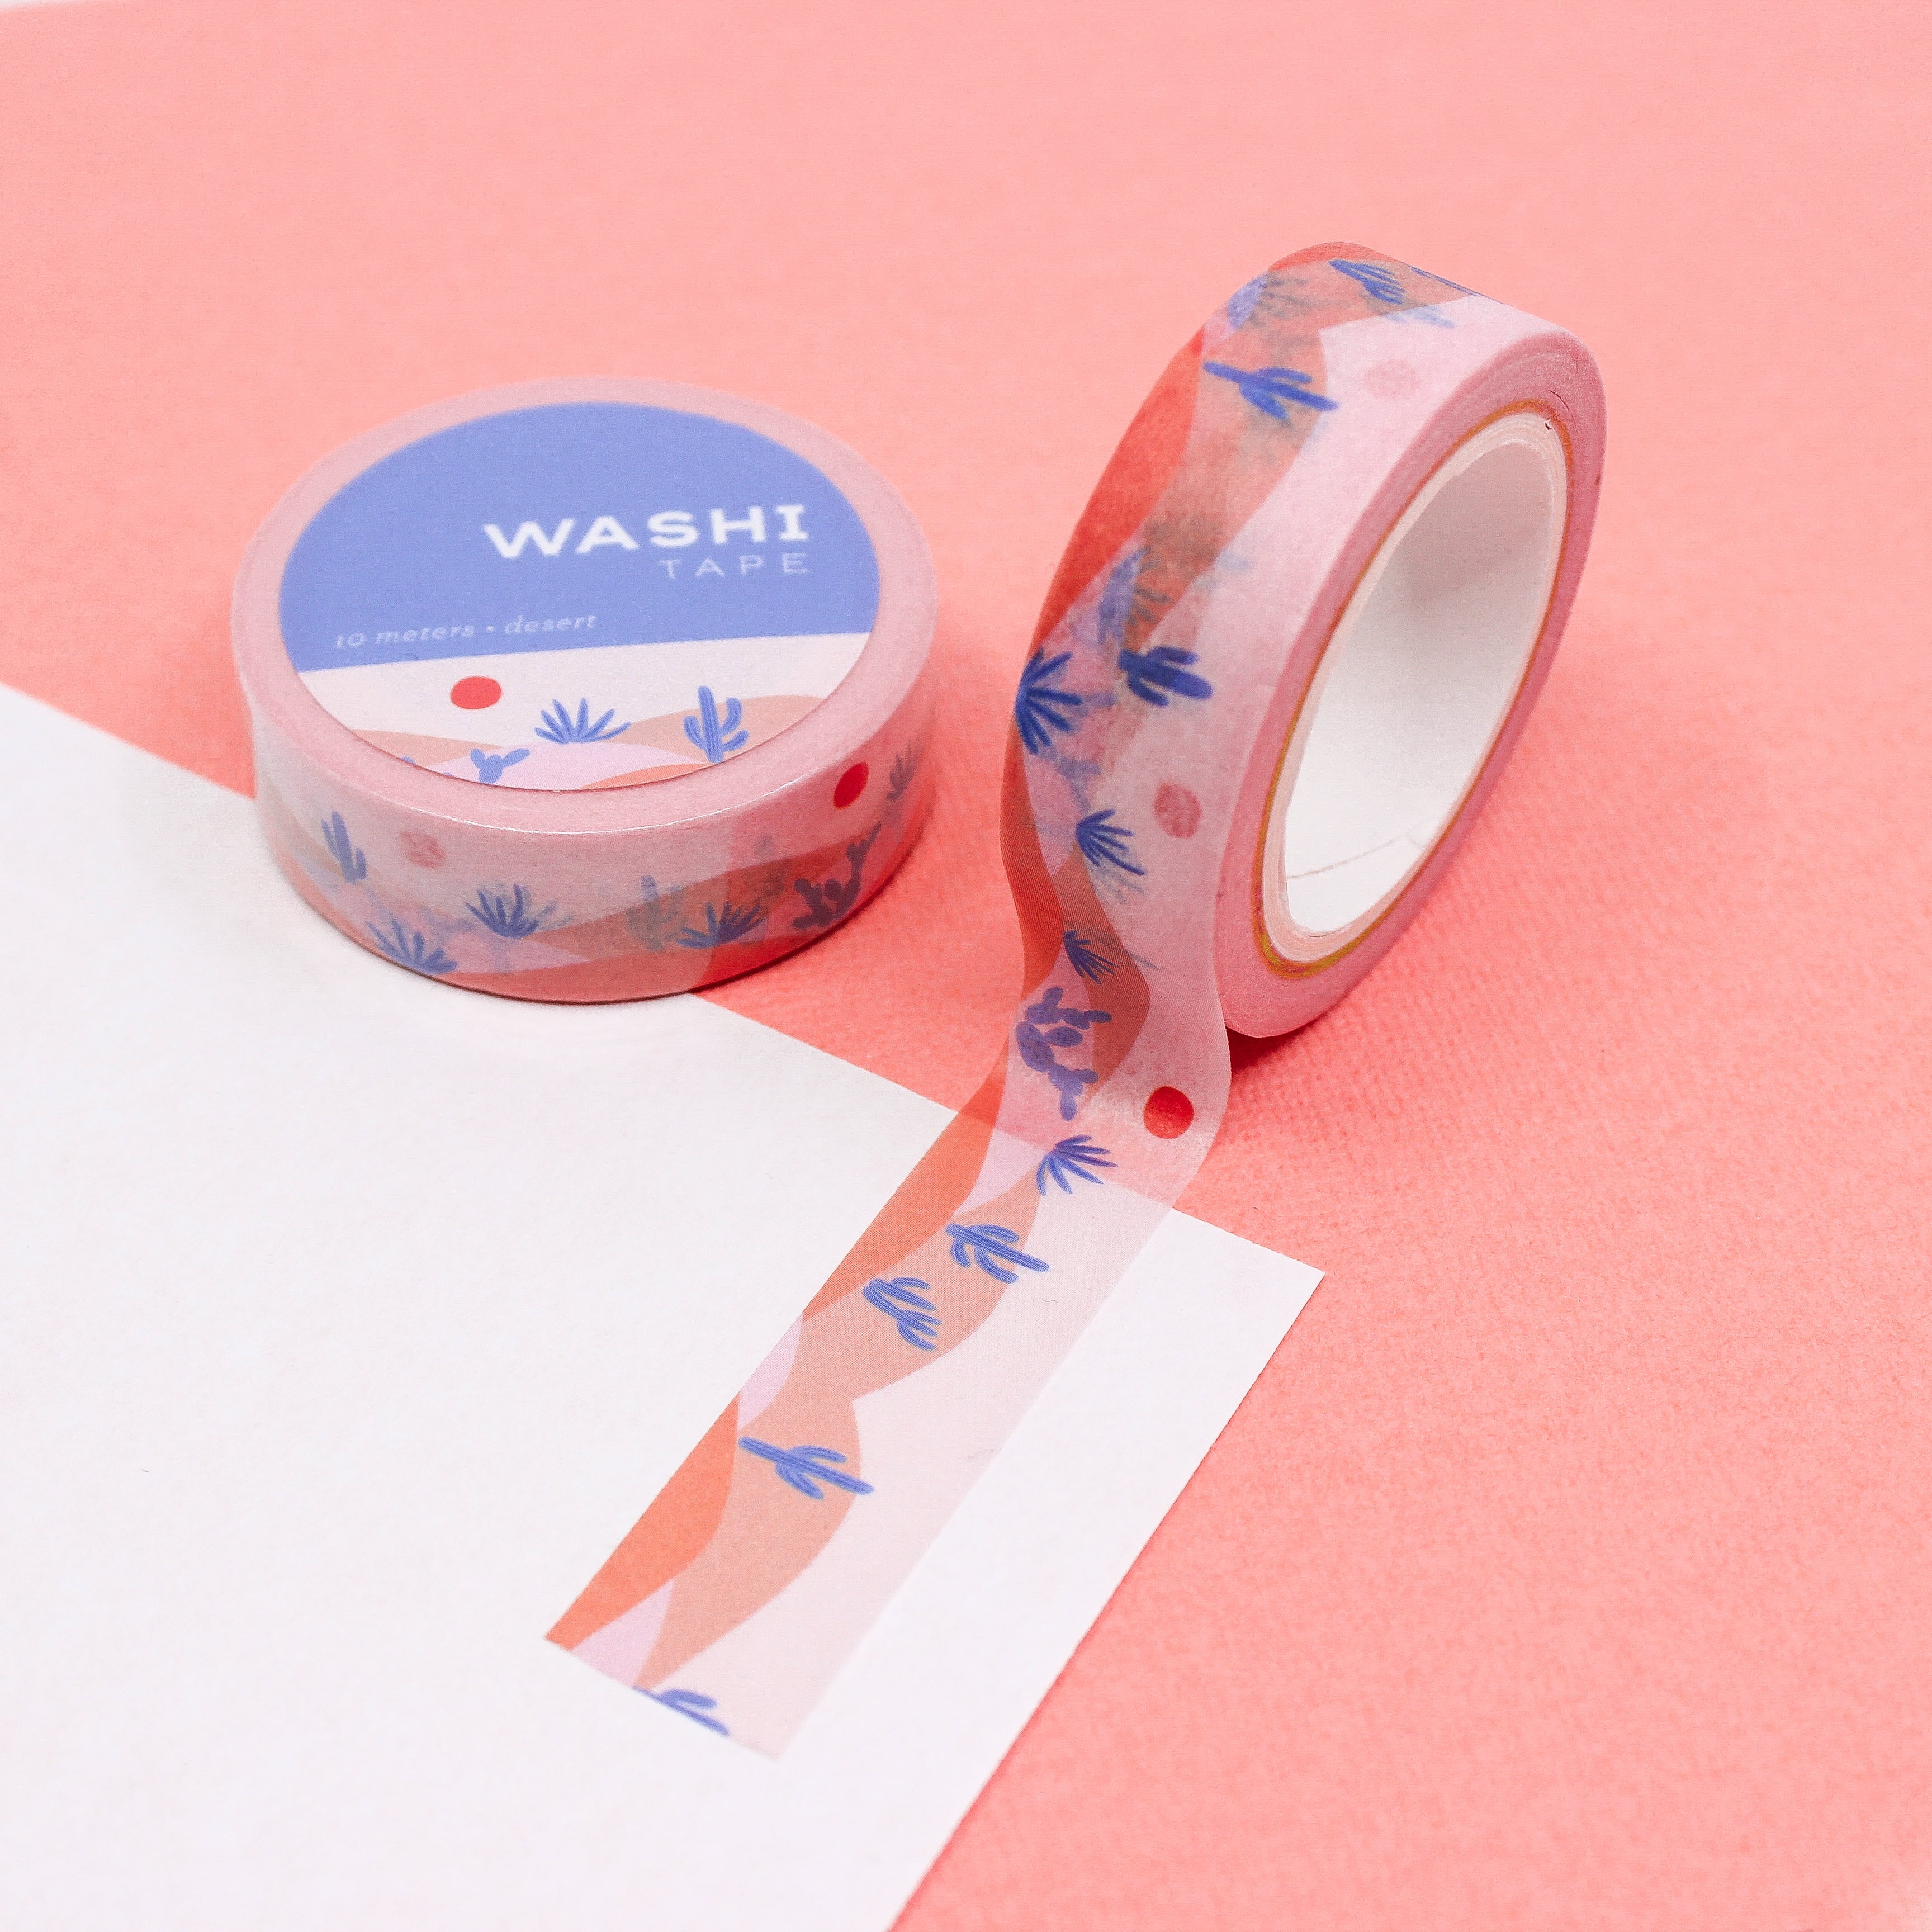 Washi Tape - Blue and White, Japanese Washi Tape, Cute Girls